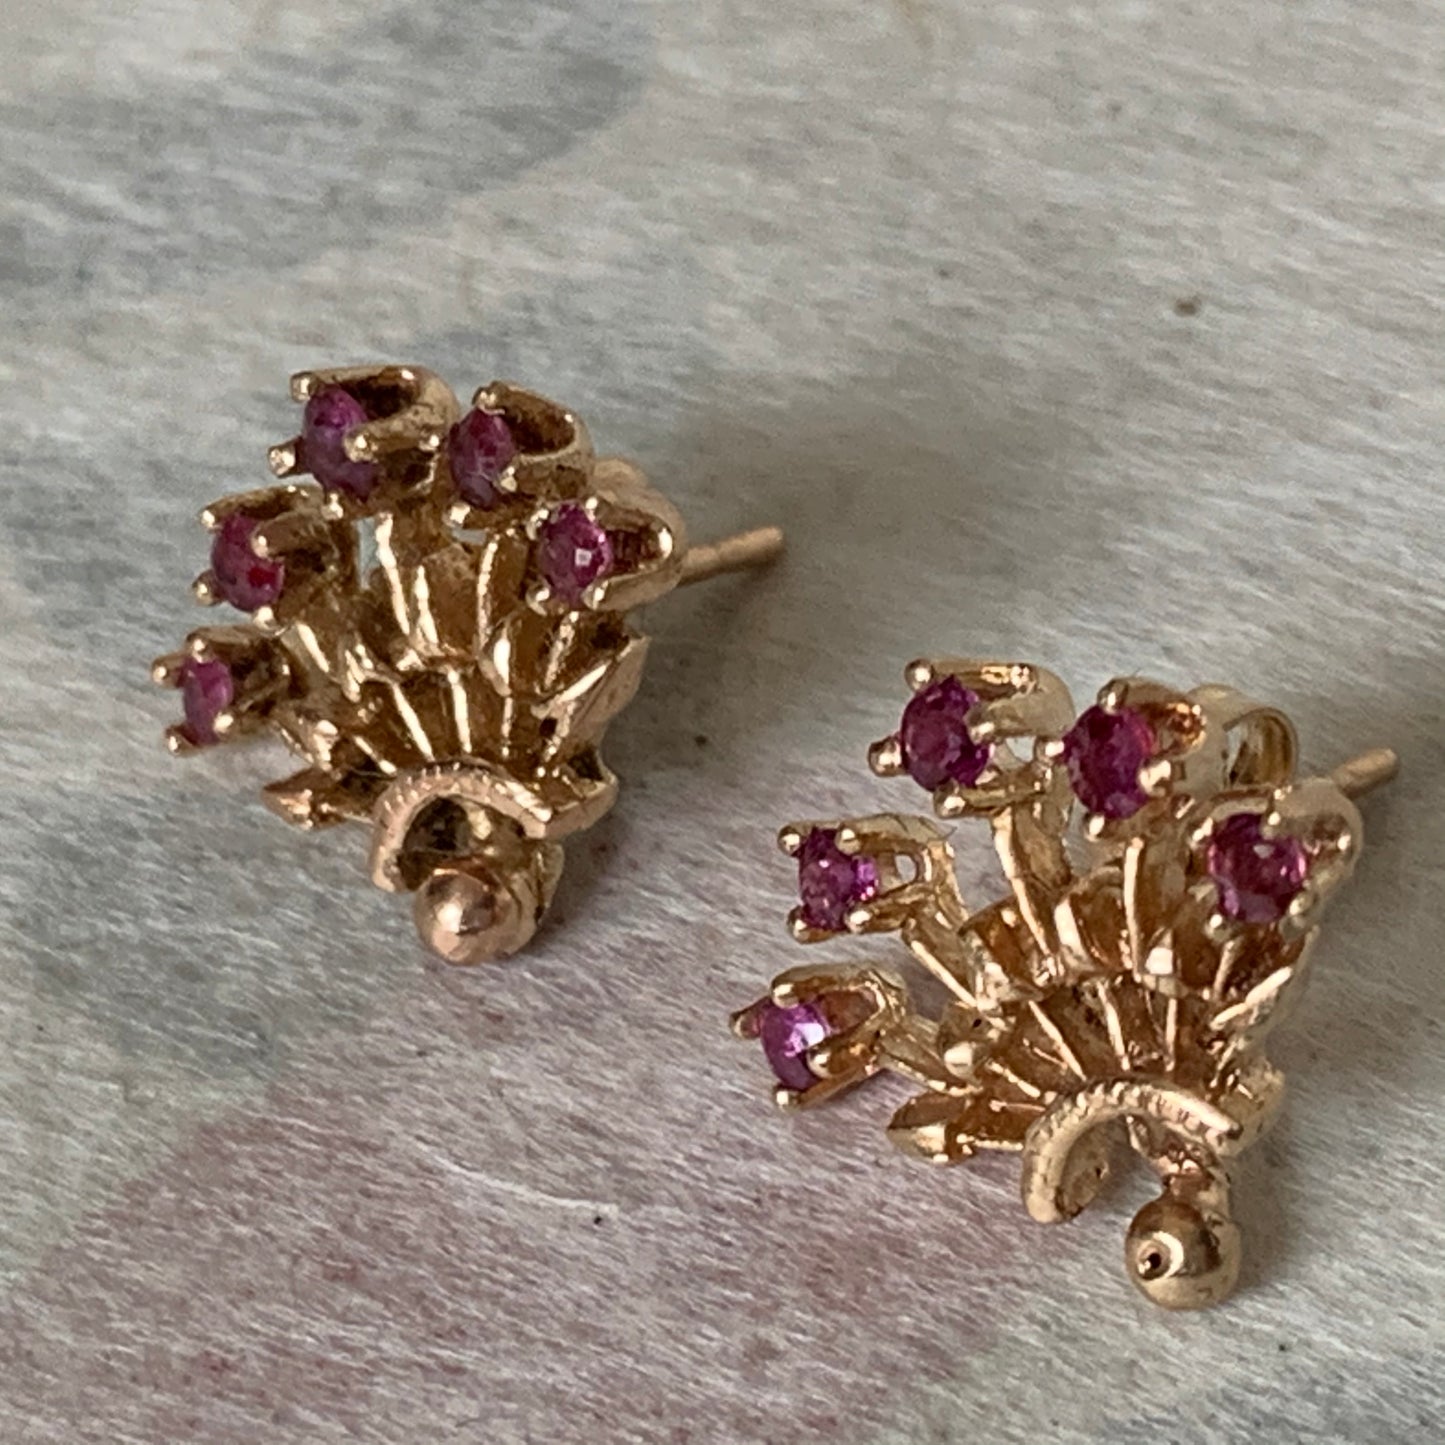 A pair of Ruby earrings